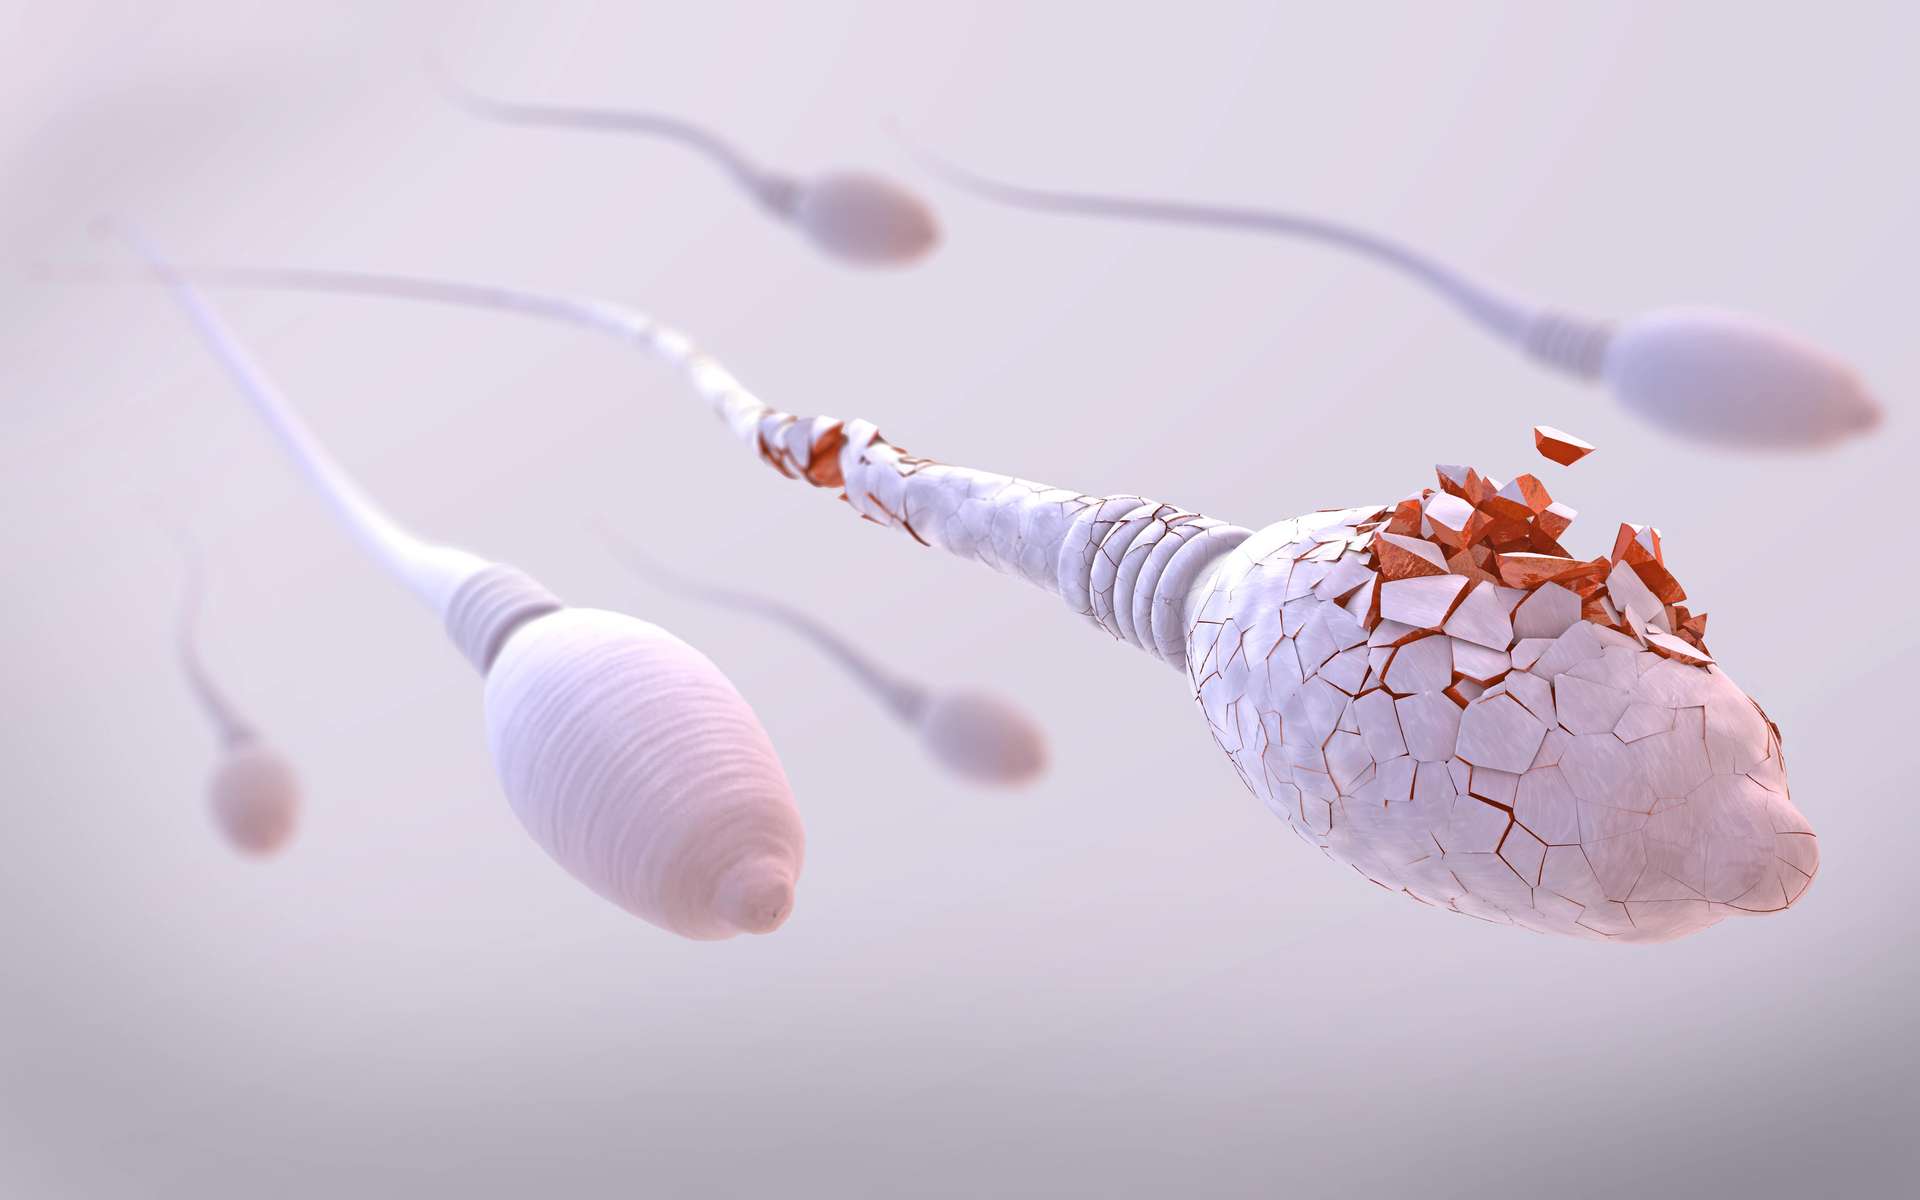 Des anticorps sont capables de viser les spermatozoïdes humains. © Christoph Burgstedt, Adobe Stock